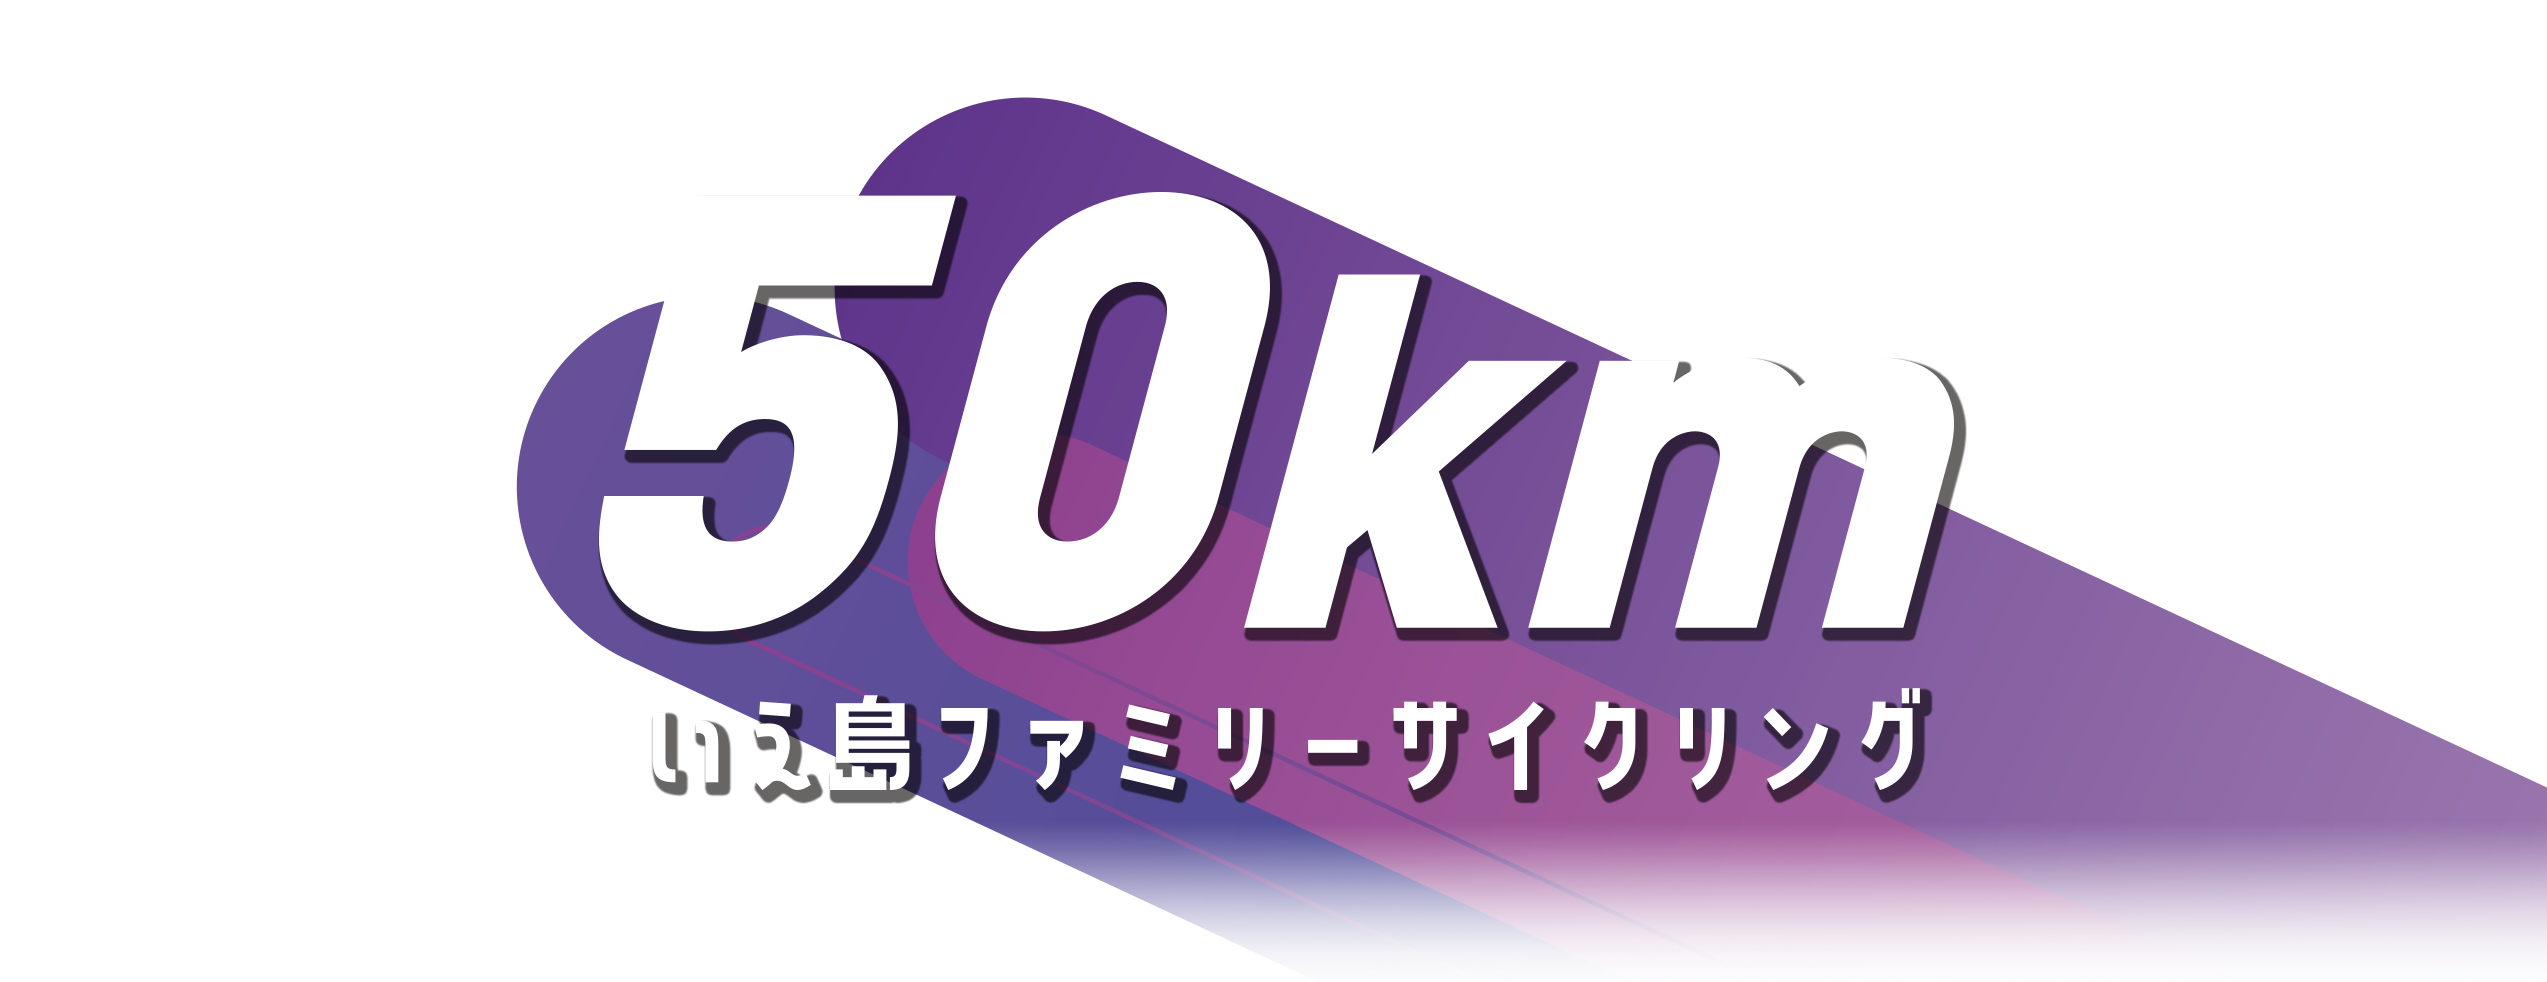 伊江島ファミリーサイクリング 50km